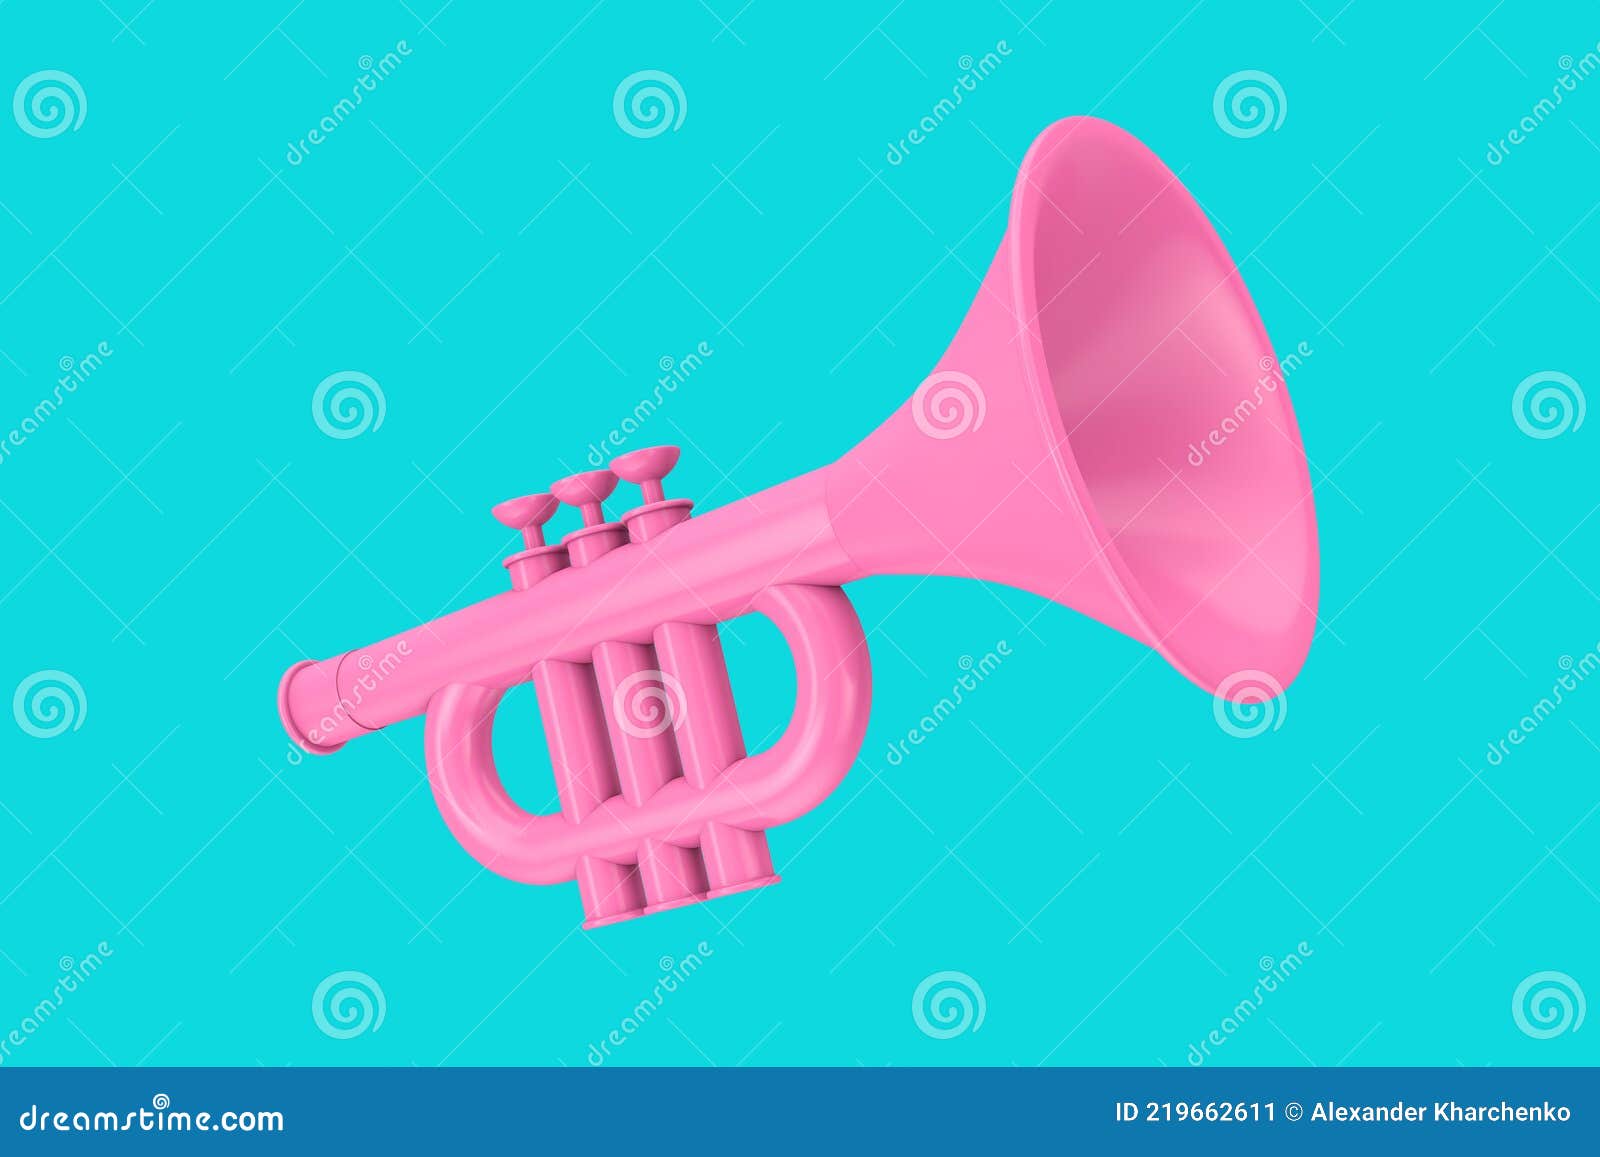 Trompeta Rosa De Juguete Para Niños En Estilo Duotono Renderizado 3d Stock  de ilustración - Ilustración de concierto, objeto: 219662611